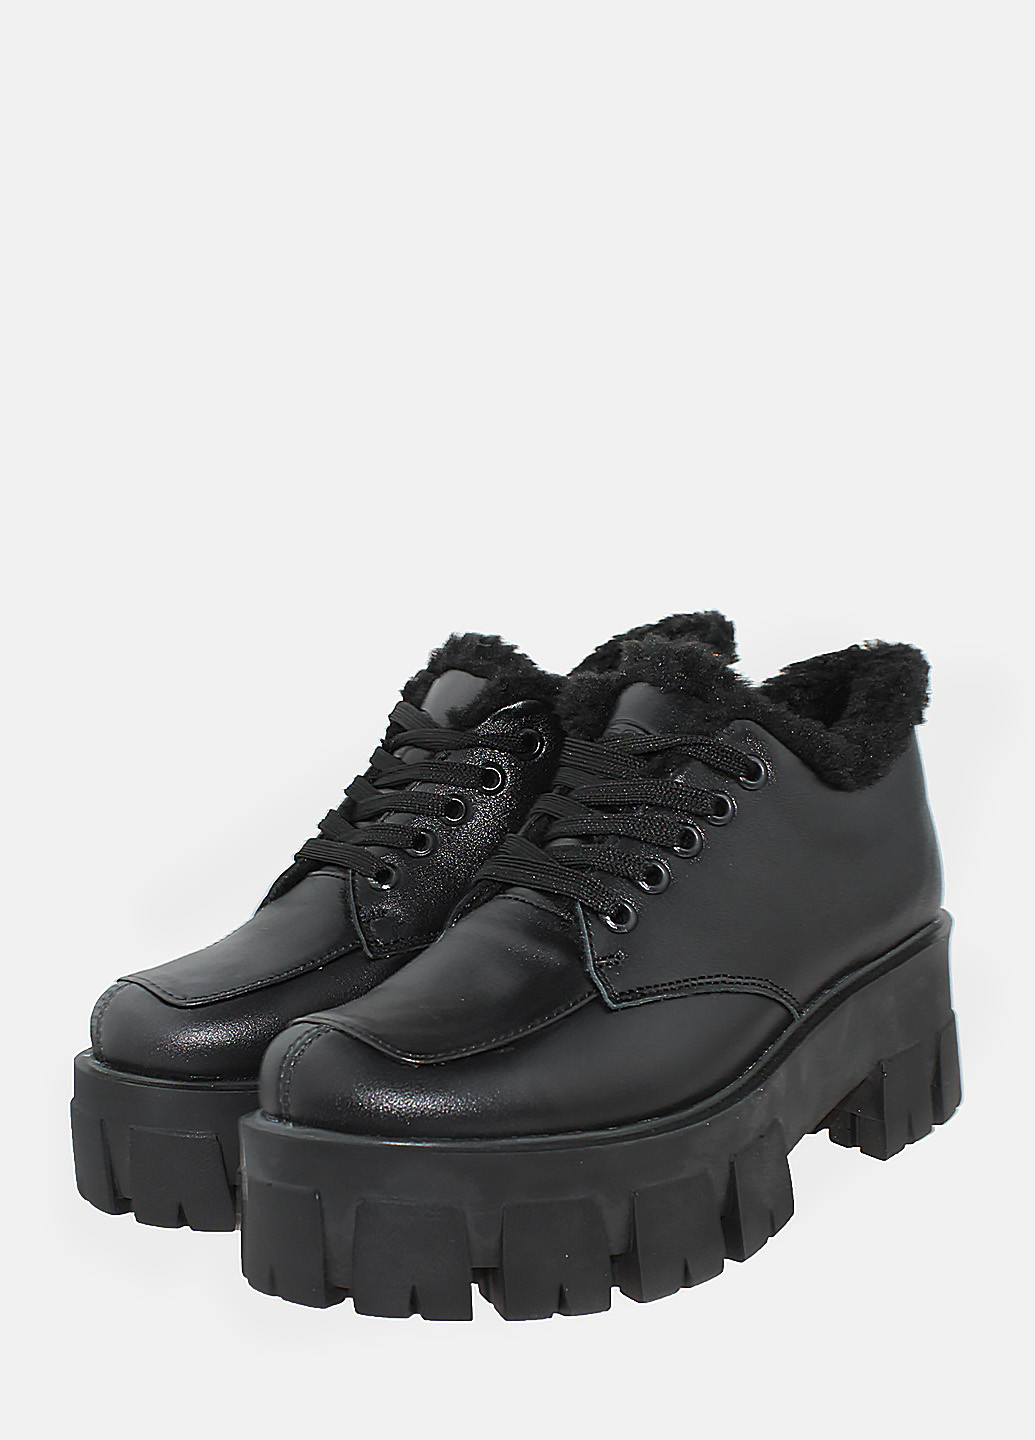 Зимние ботинки rdm2104-1 черный Daragani